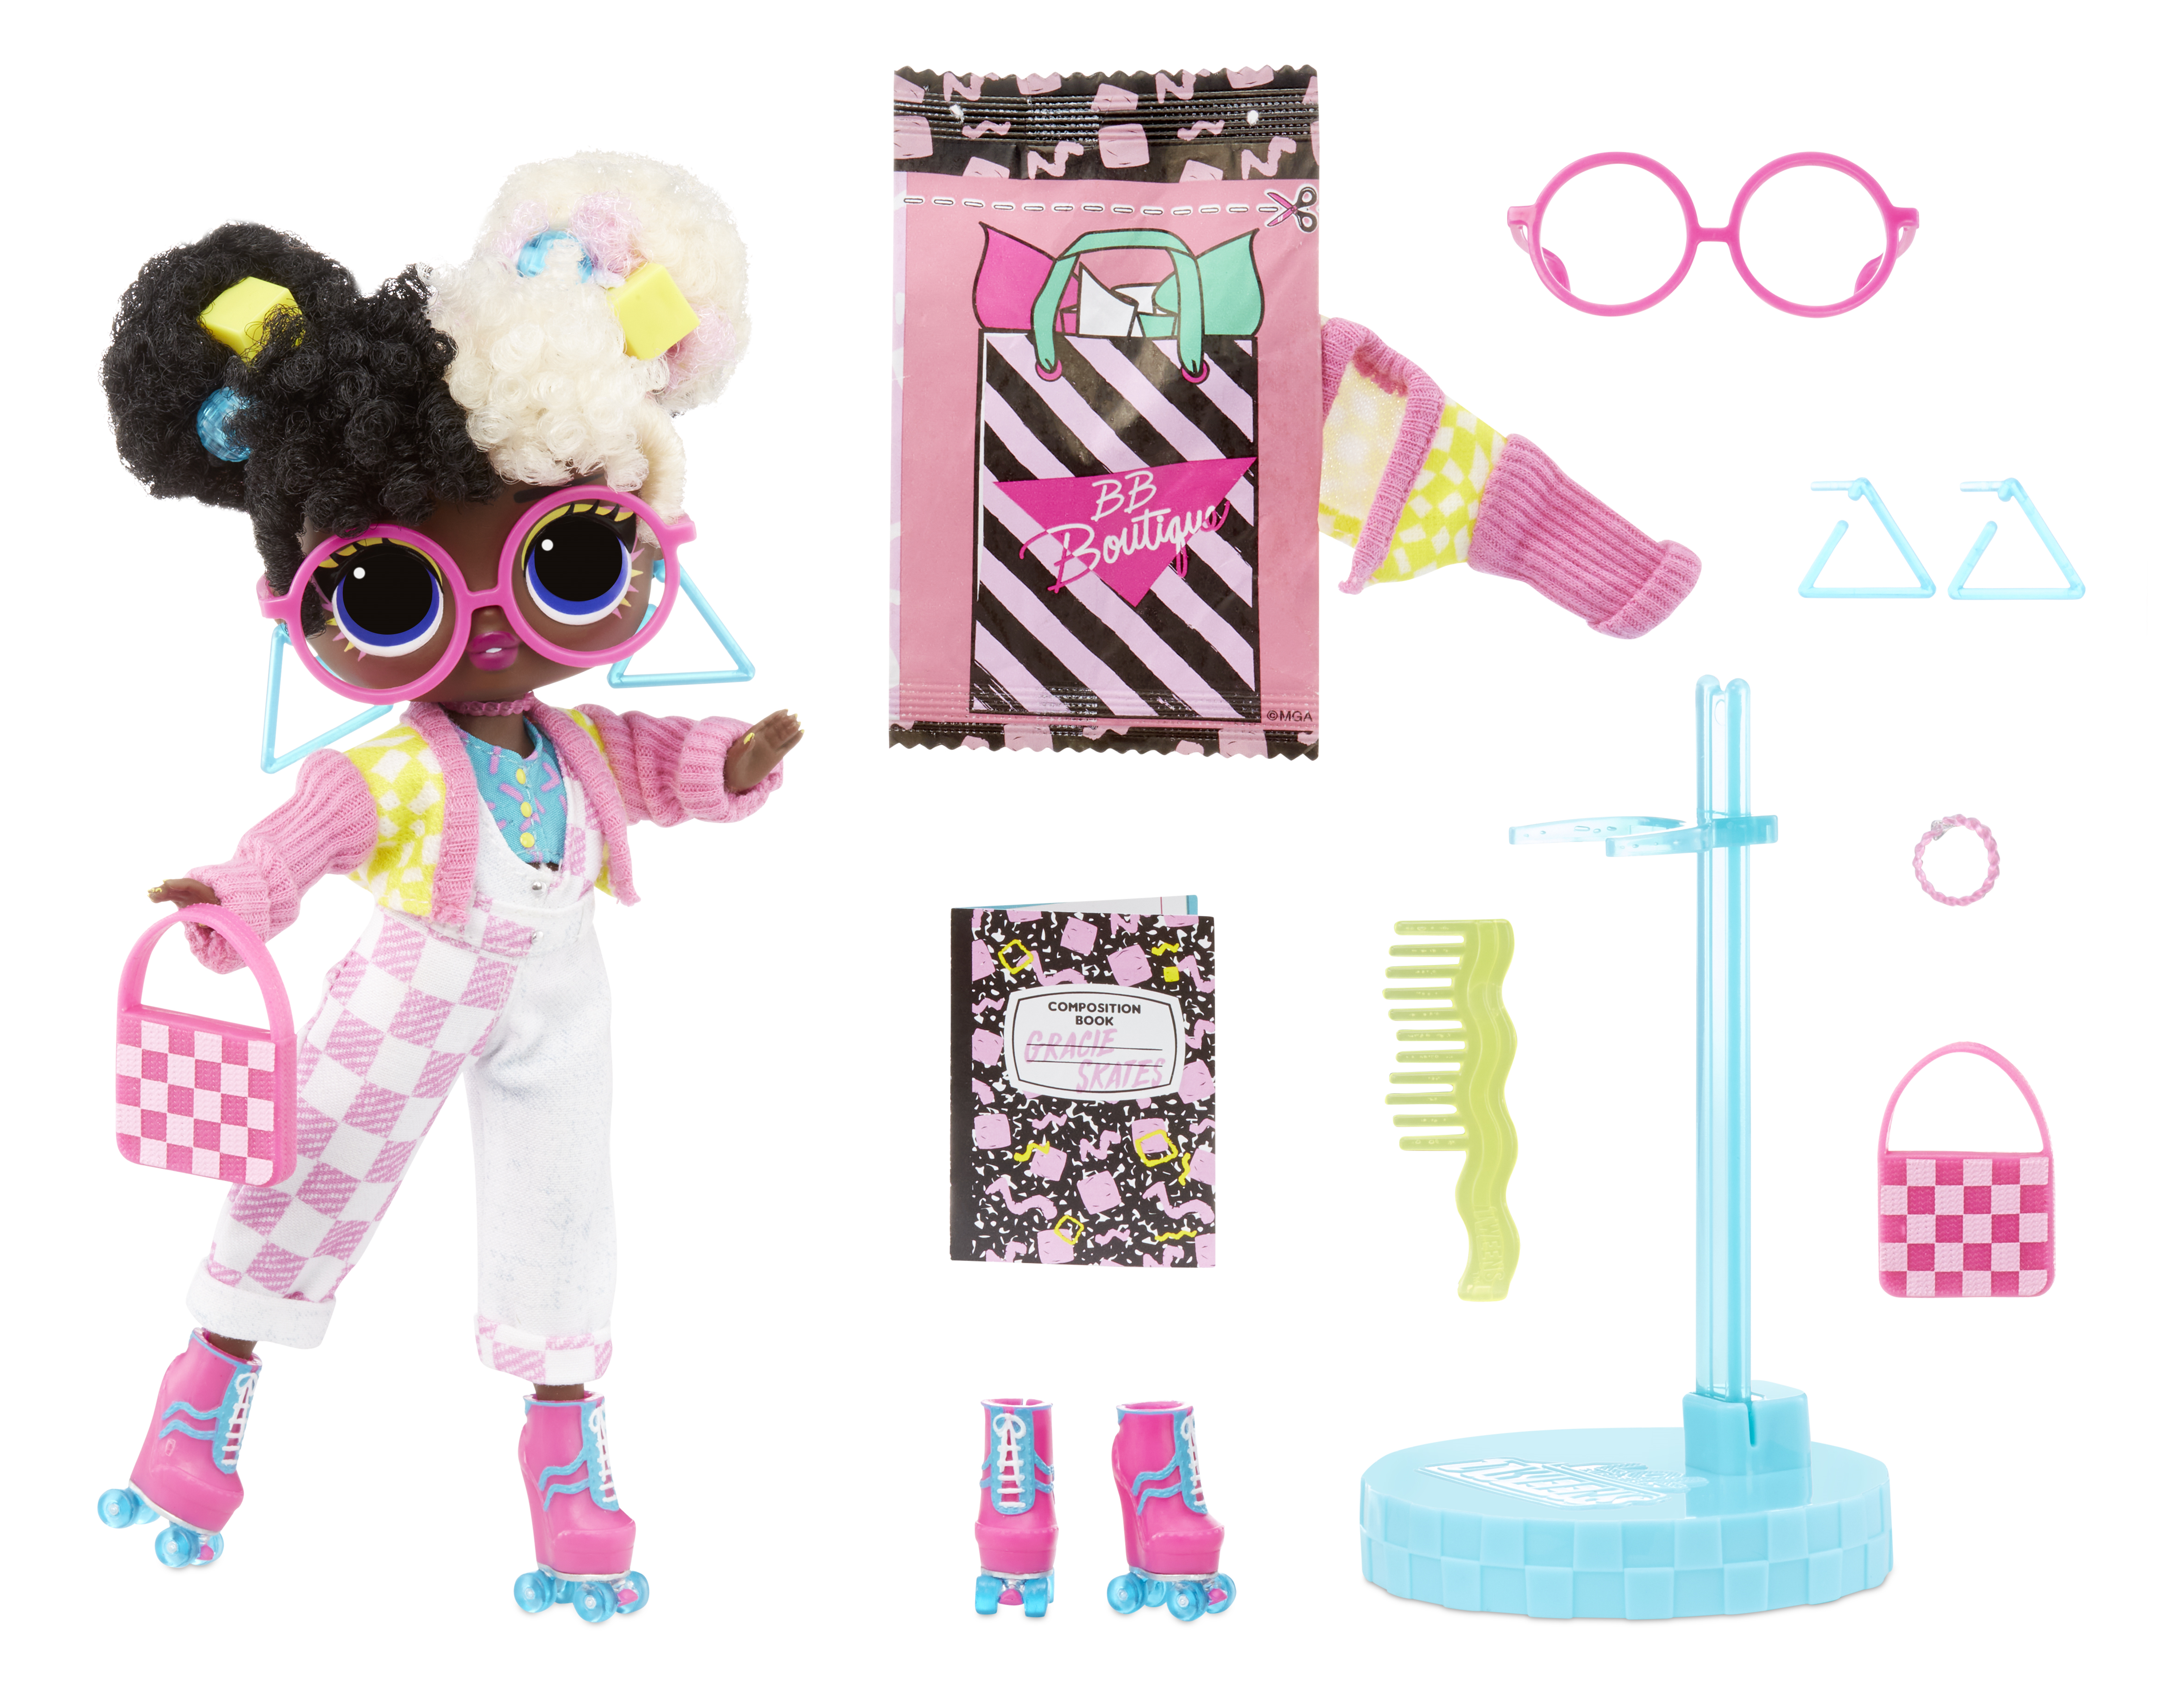 Lol surprise tweens serie 2 gracie skates - bambola da 15cm con 15 sorprese tra cui abiti, accessori, supporto e altro - LOL